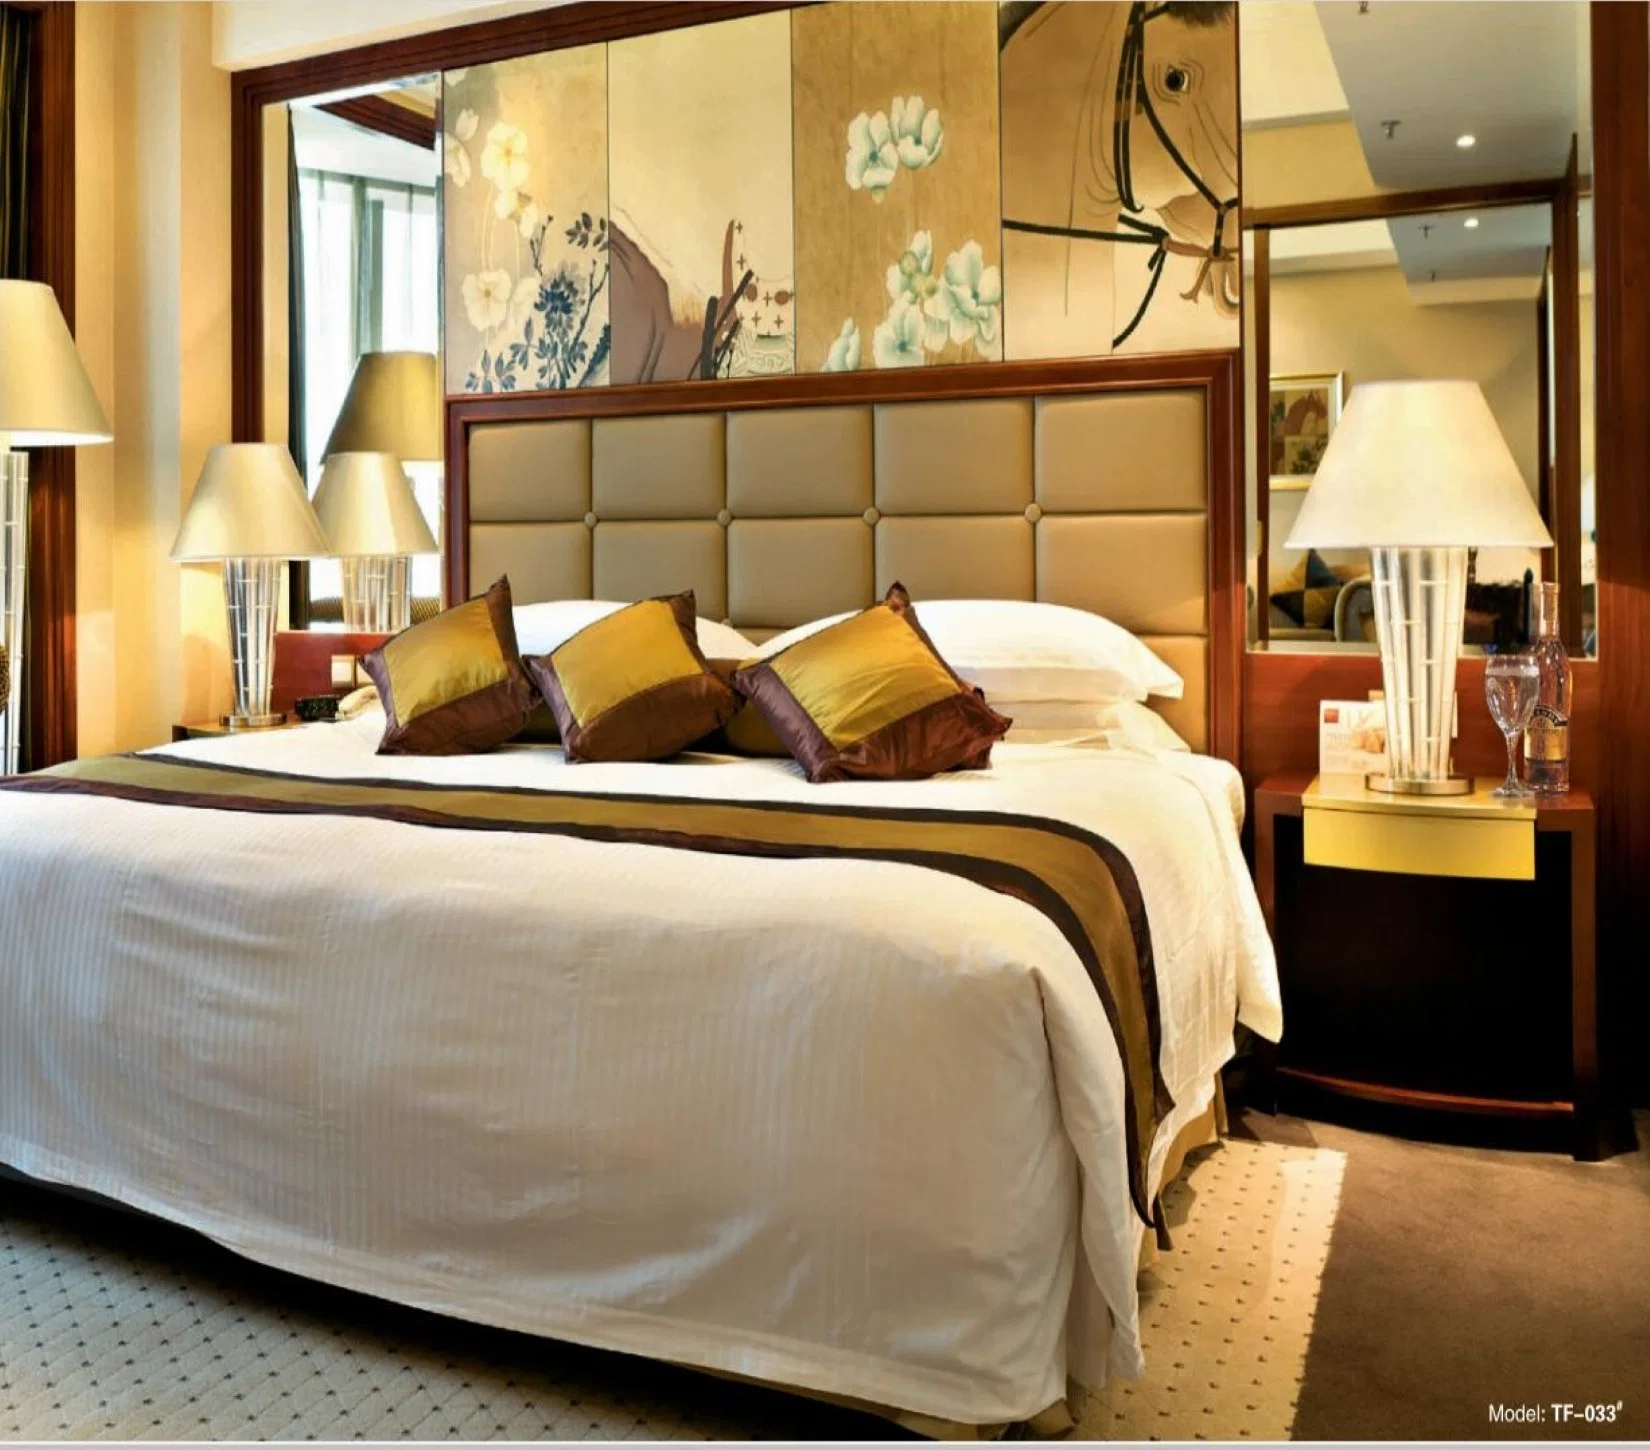 Профессиональные индивидуальные 5-звездочный дизайн-отель мебель высокого качества и деревянные конструкции, с одной спальней